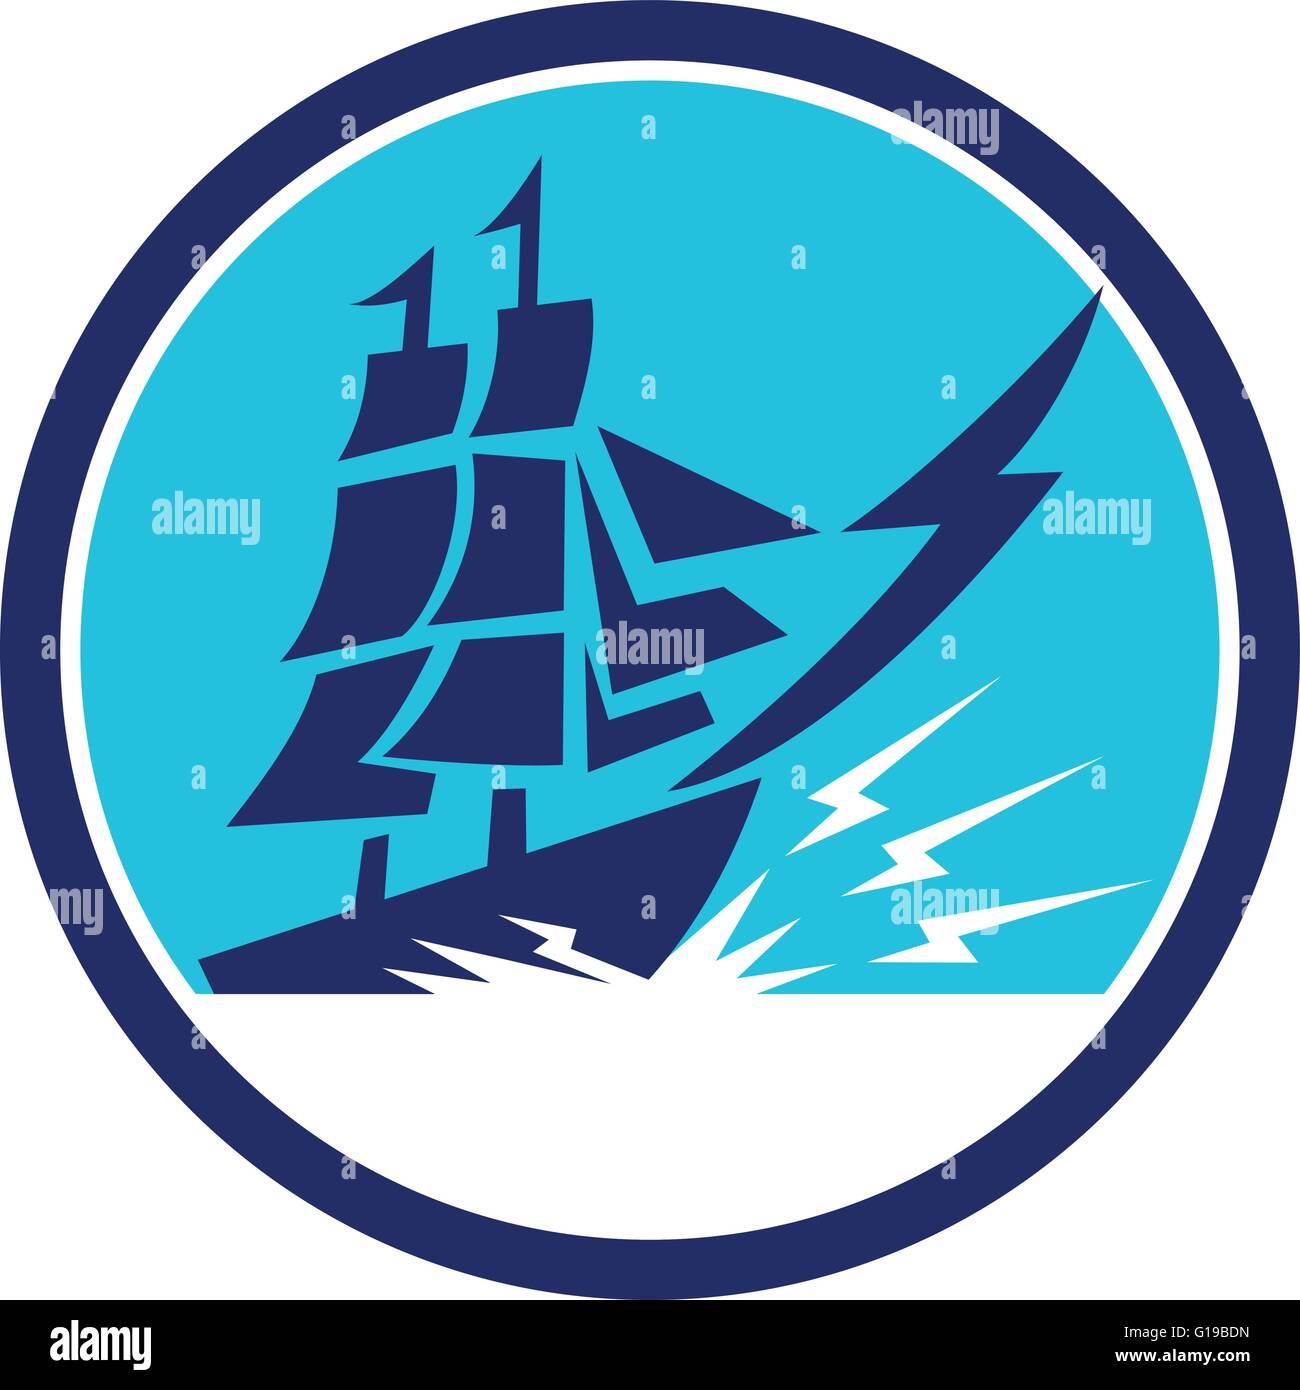 Illustrazione di un alto galeone a vela nave con il simbolo del fulmine sulla prua visto dal lato impostato all'interno del cerchio fatto in stile retrò. Illustrazione Vettoriale